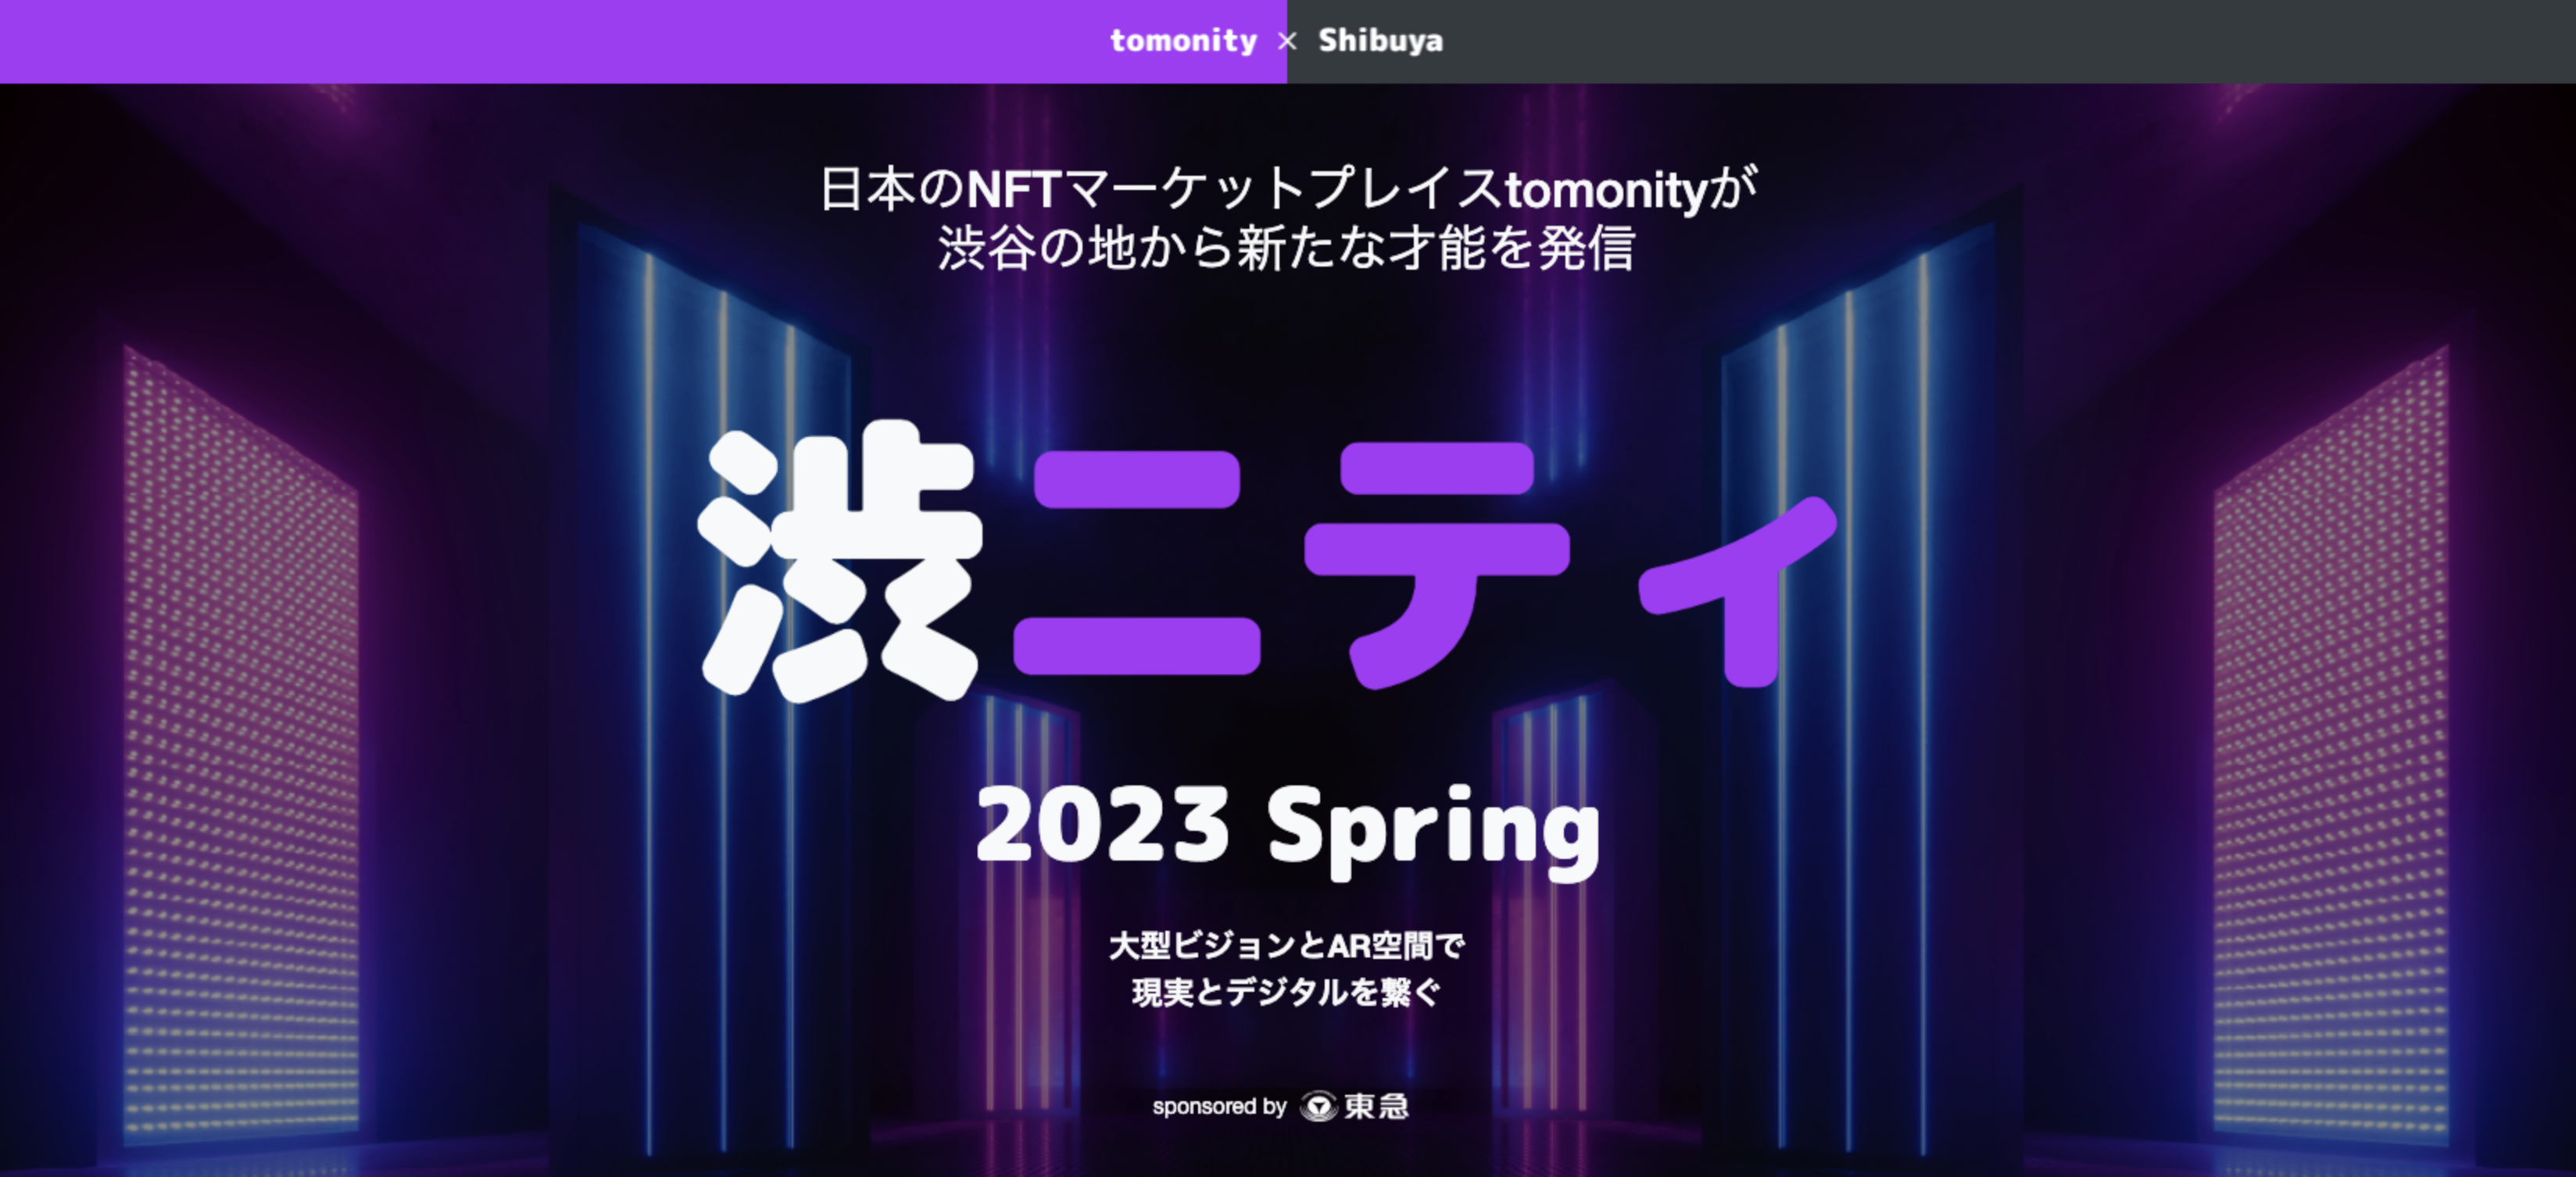 3/28〜【エントリー受付開始】渋ニティ 2023 Spring